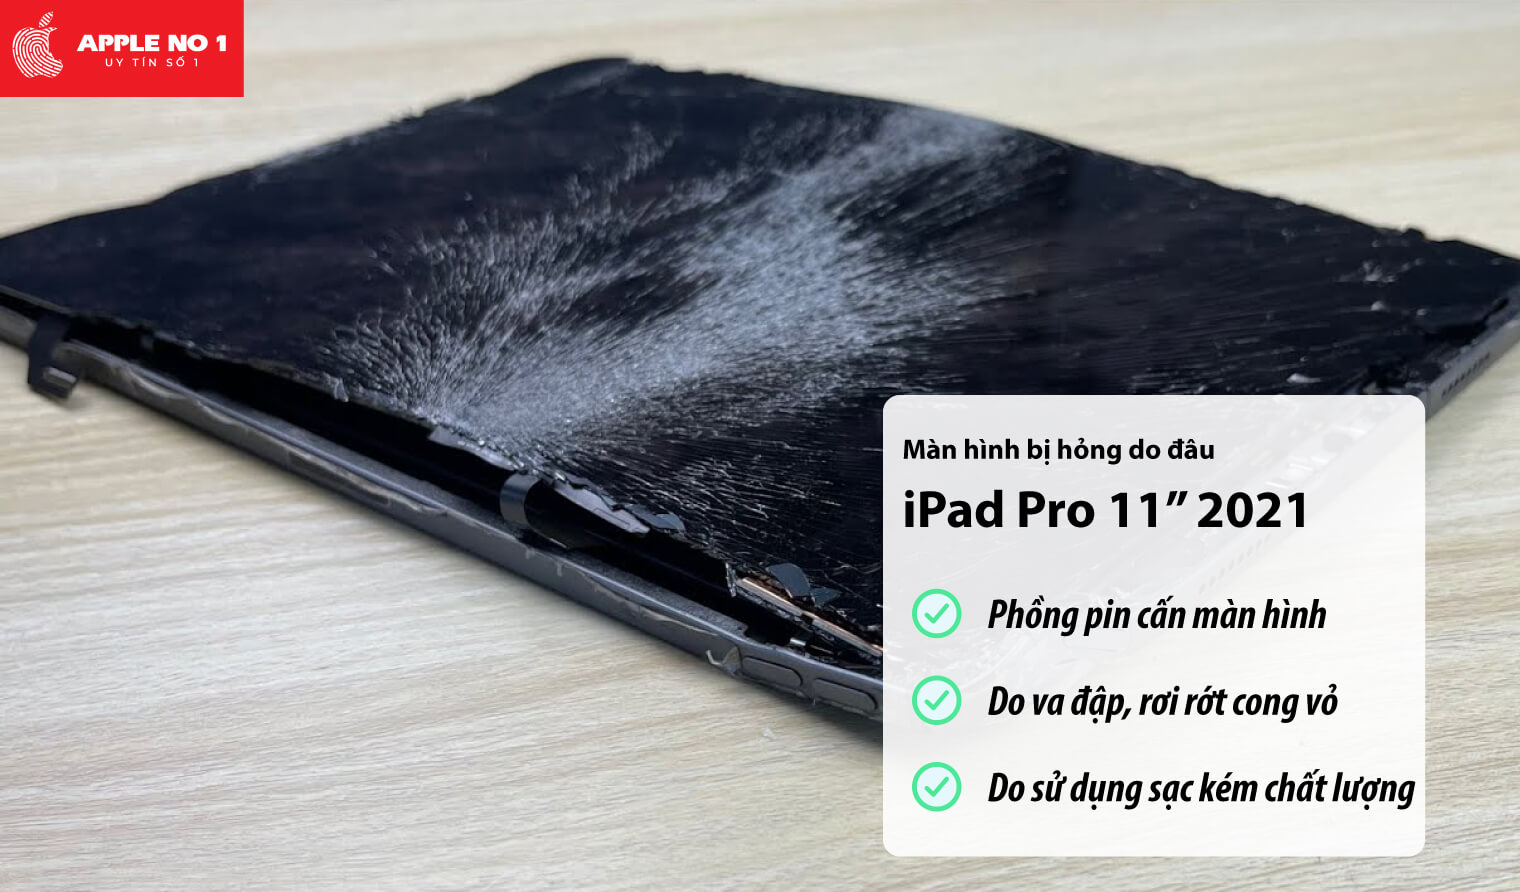 Màn hình iPad Pro 11 inch 2021 bị hỏng do đâu?